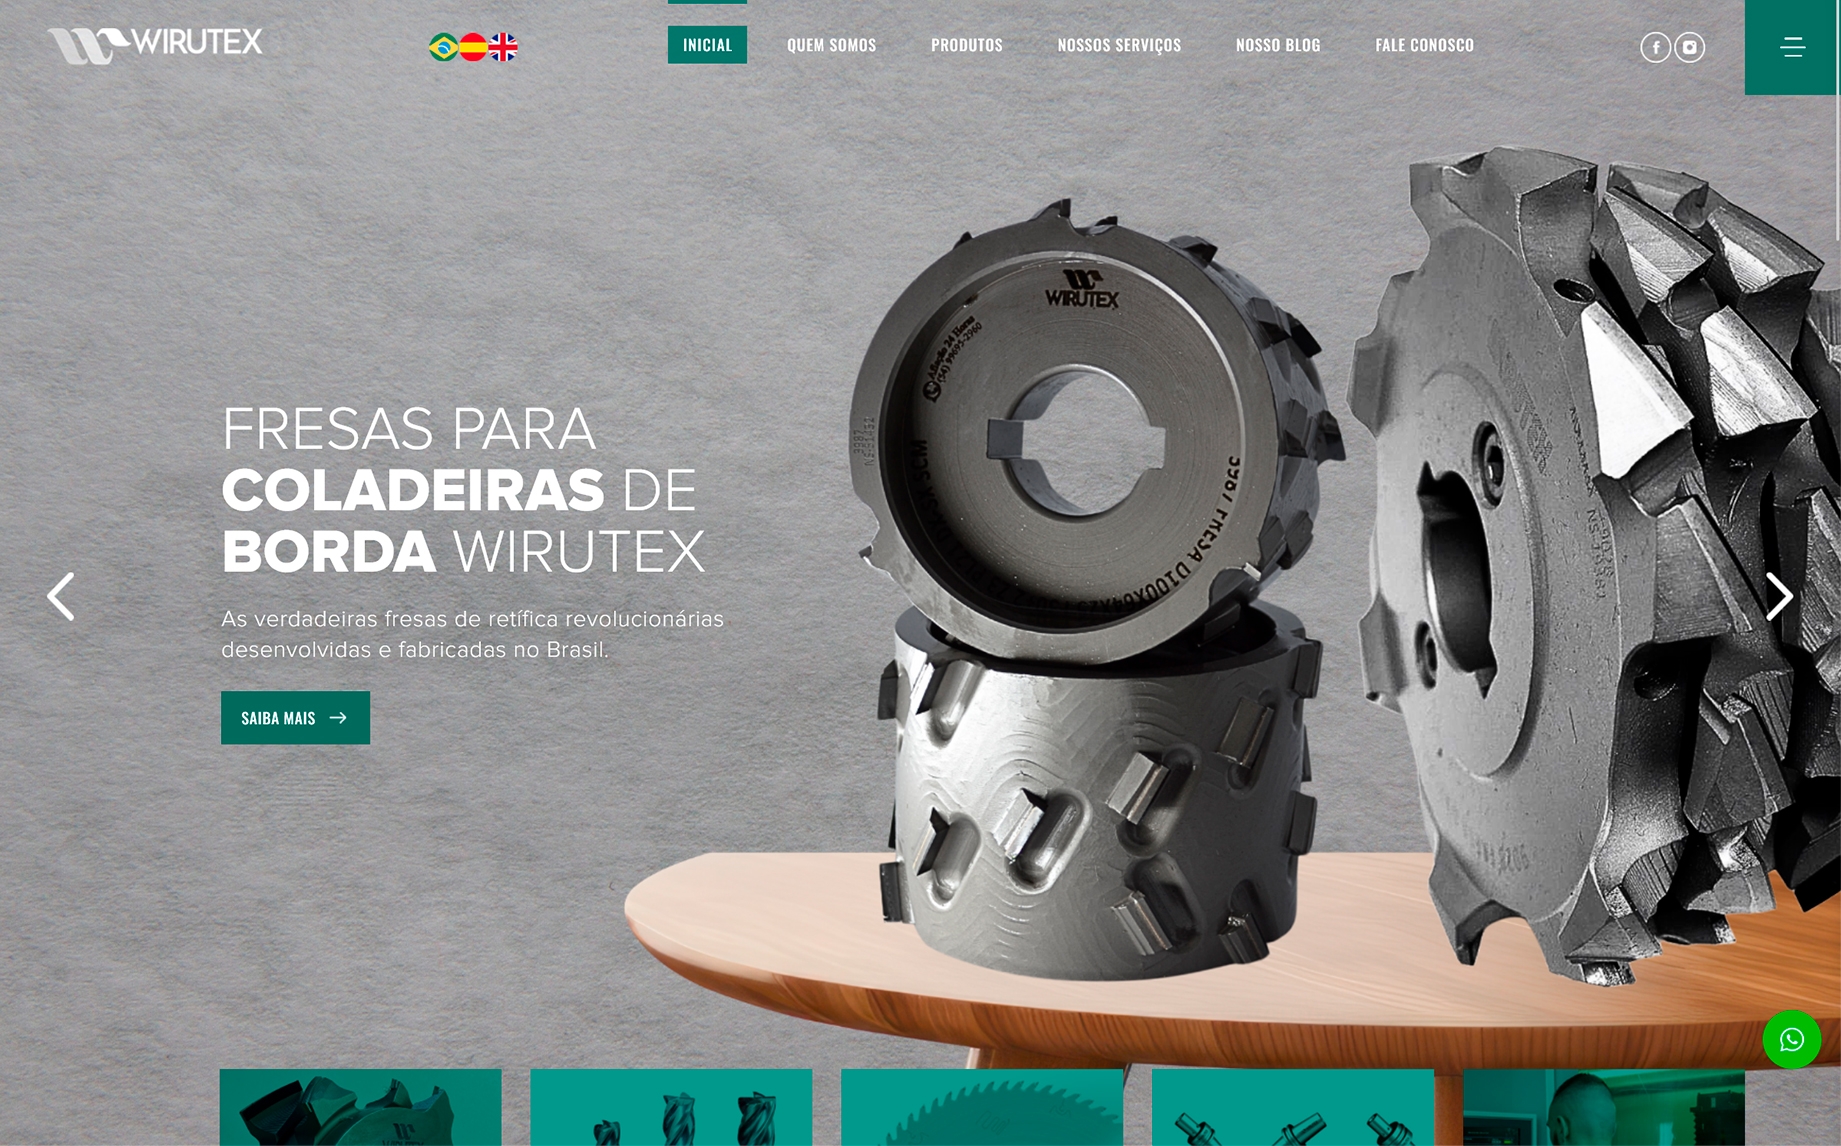 tela inicial do site www.wirutex.com.br/